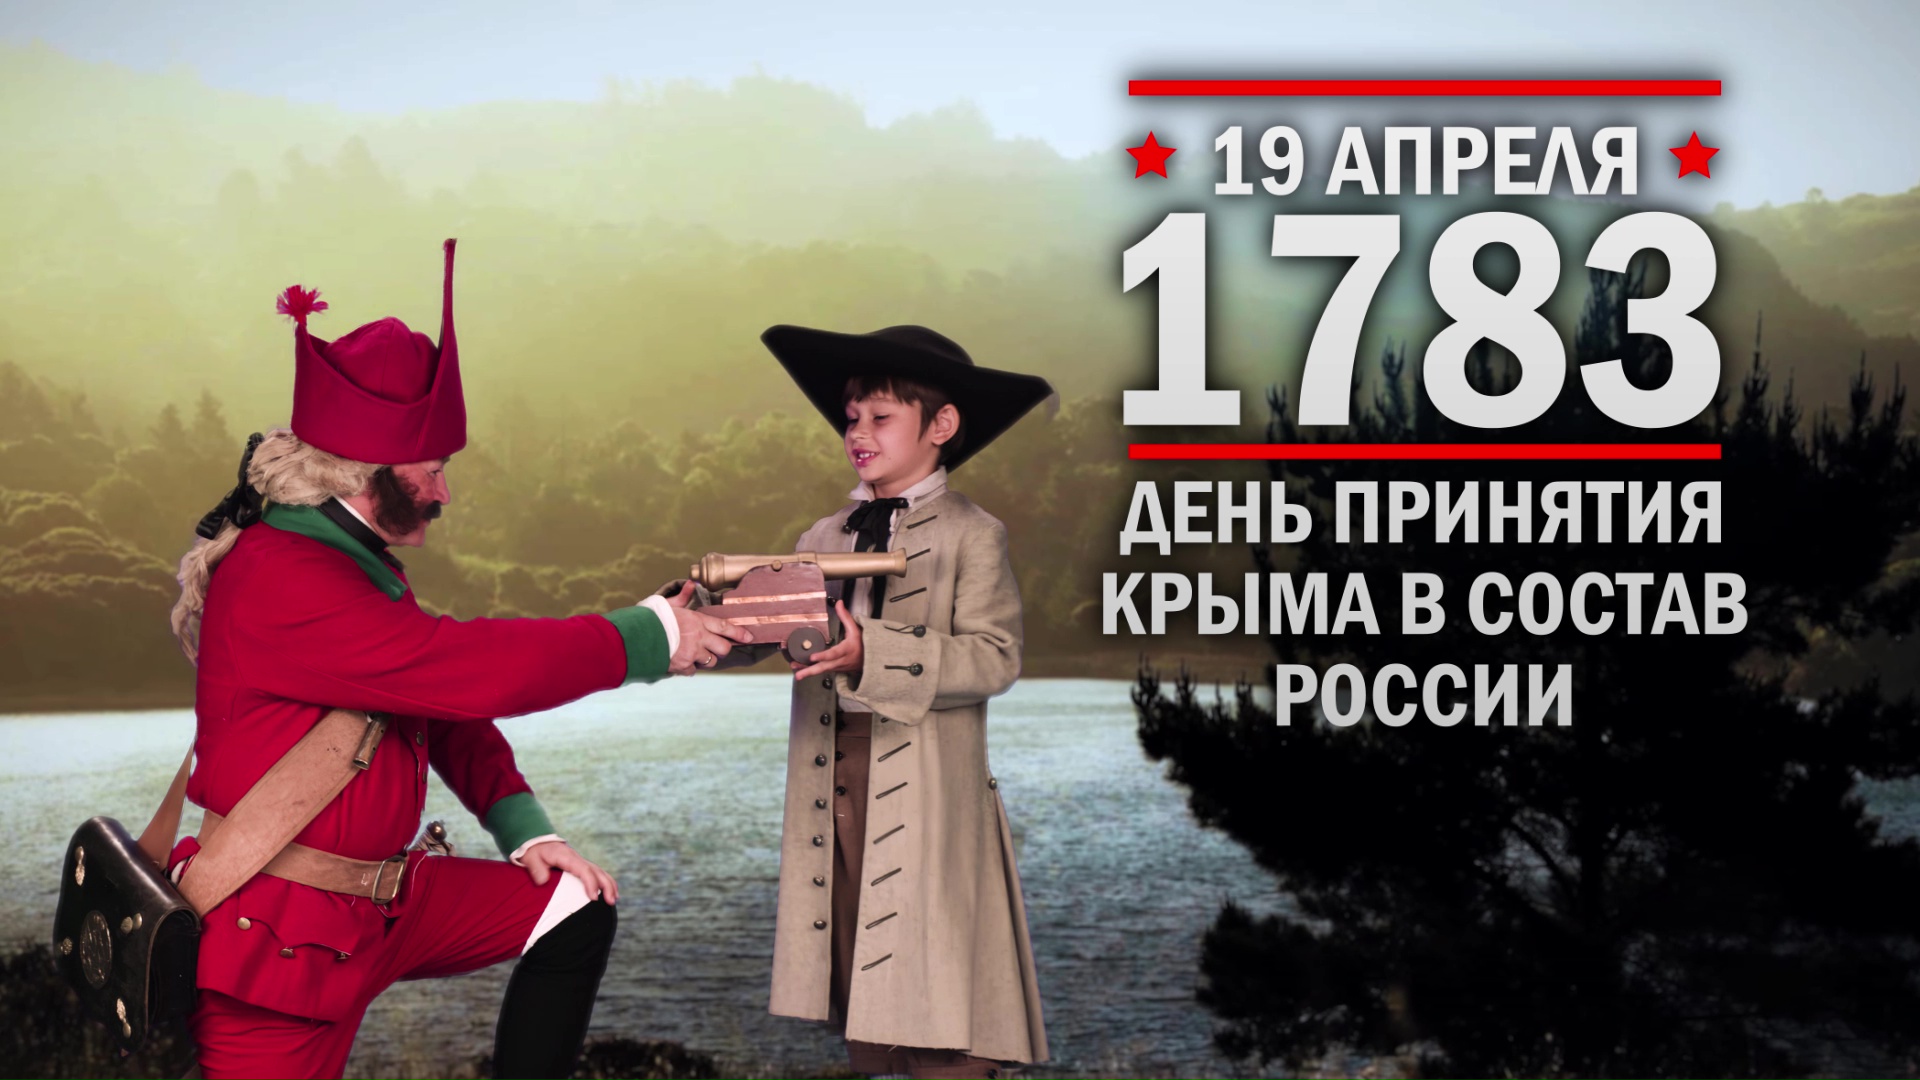 19 апреля 1783 год. День принятие Крыма в состав России